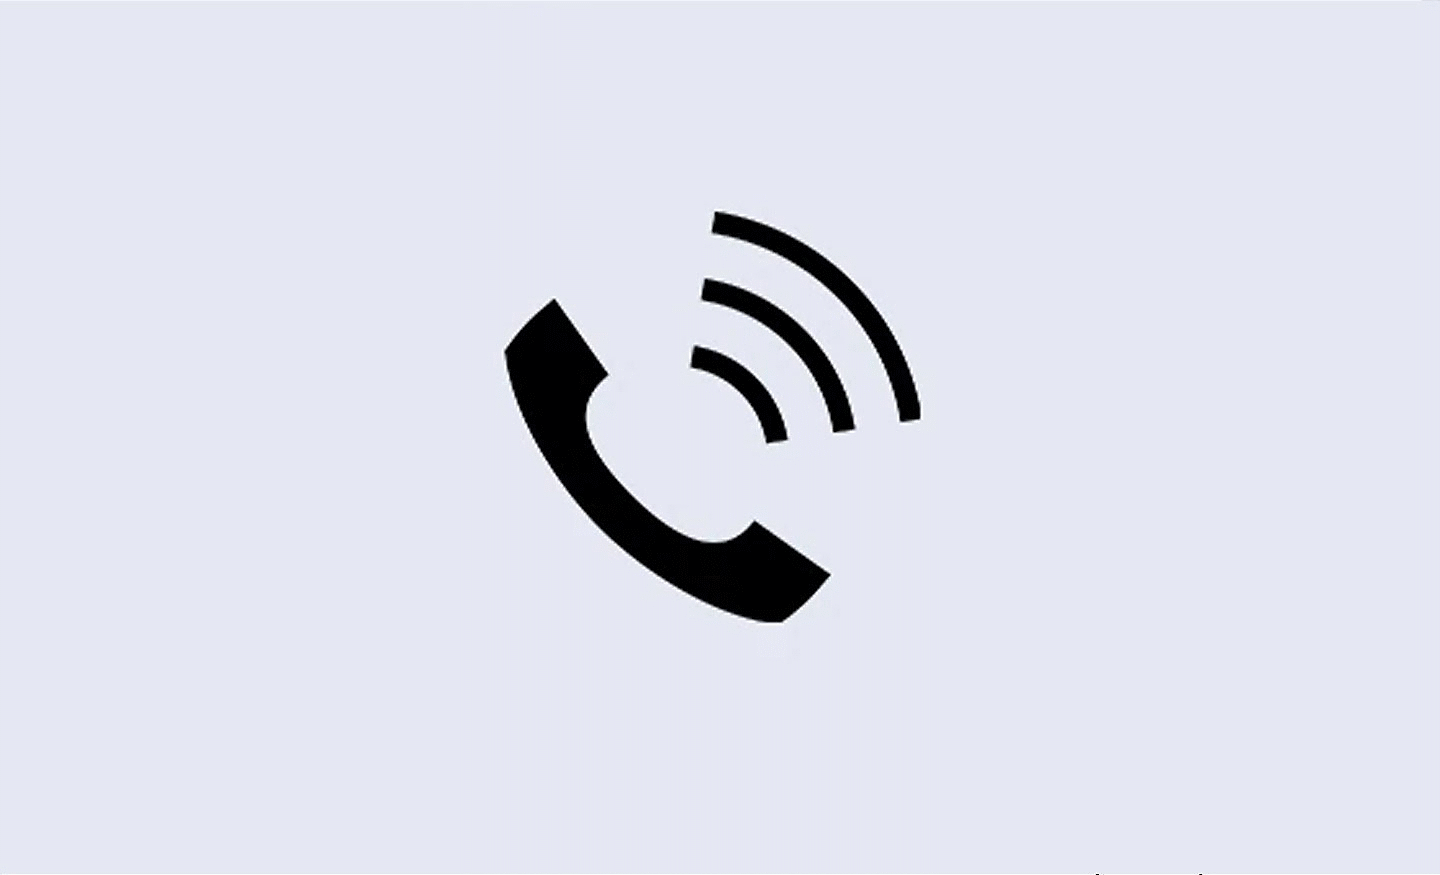 Gambar ikon telepon dengan tiga garis melengkung di atasnya